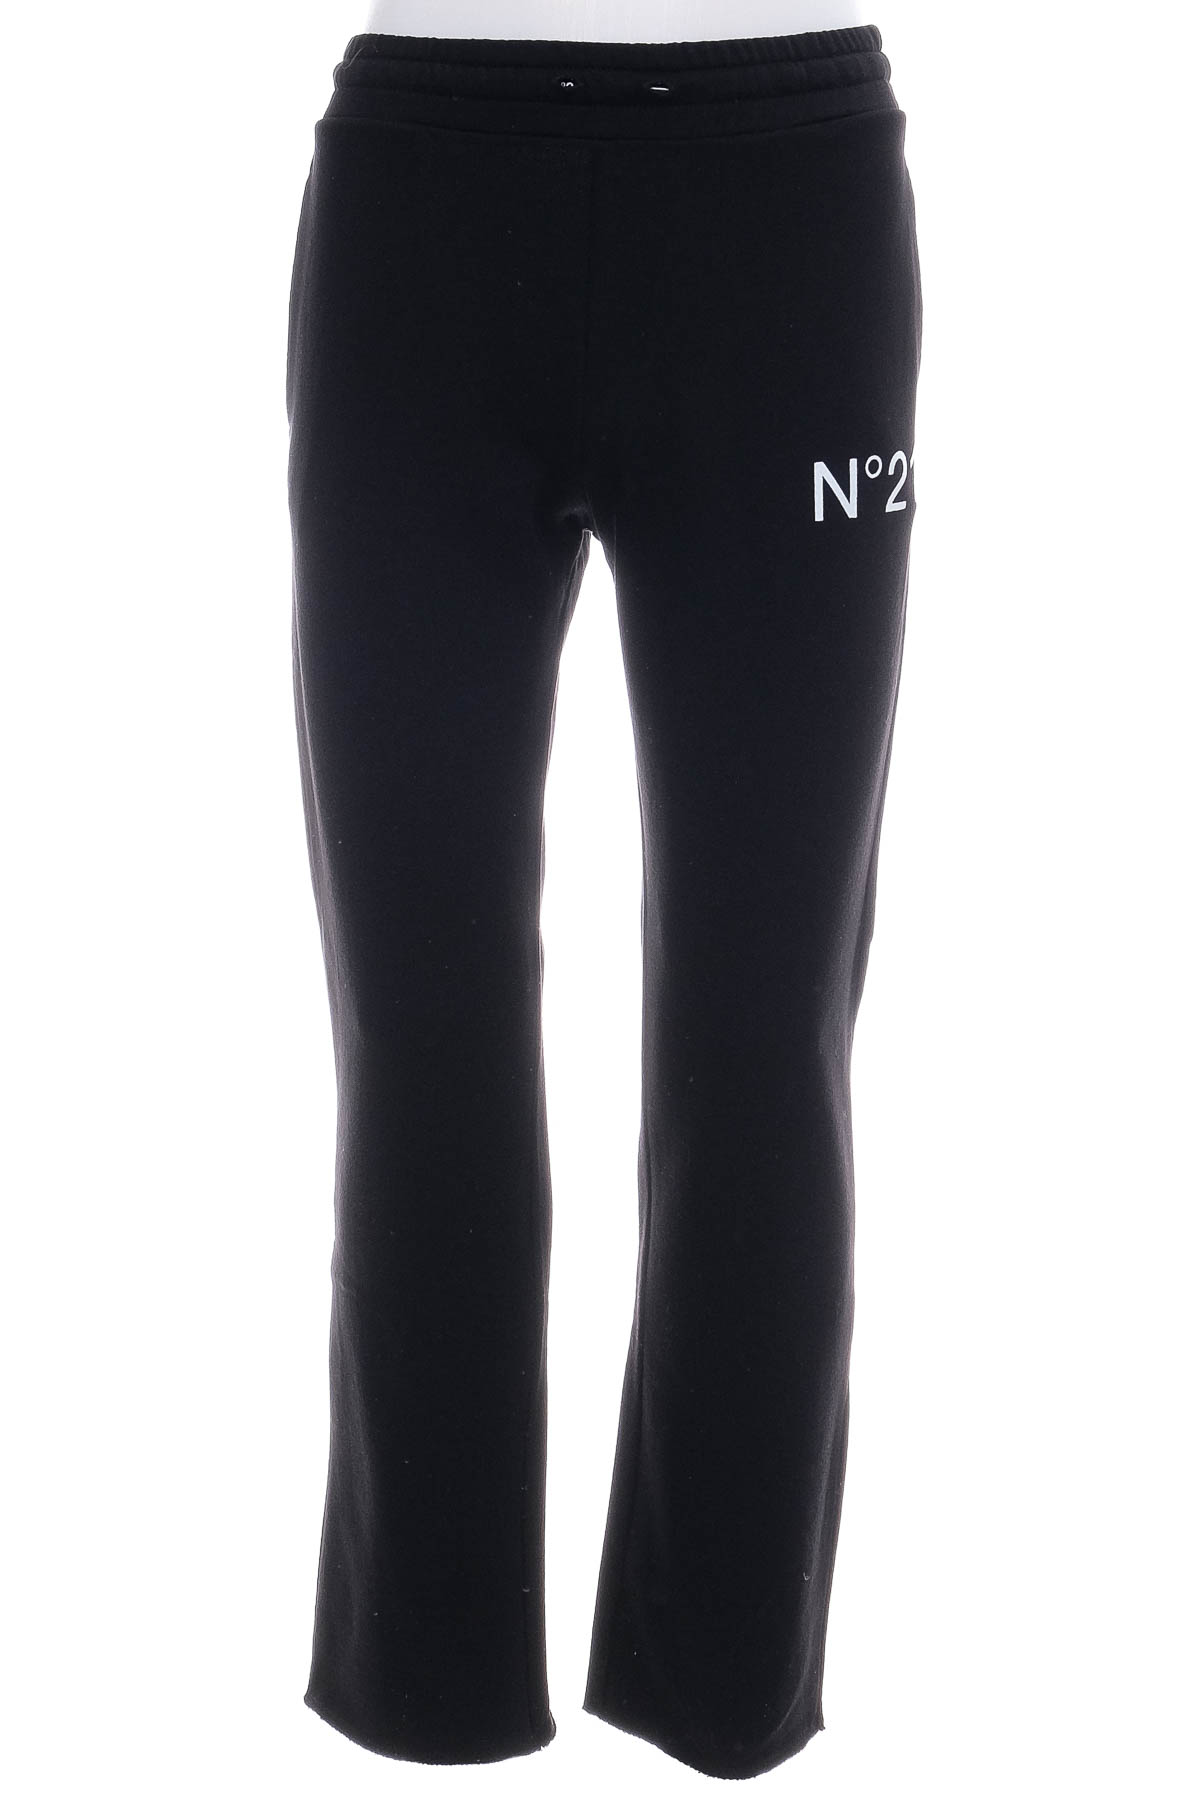 Spodnie sportowe dla dziewczynek - N21 Numero Ventuno - 0